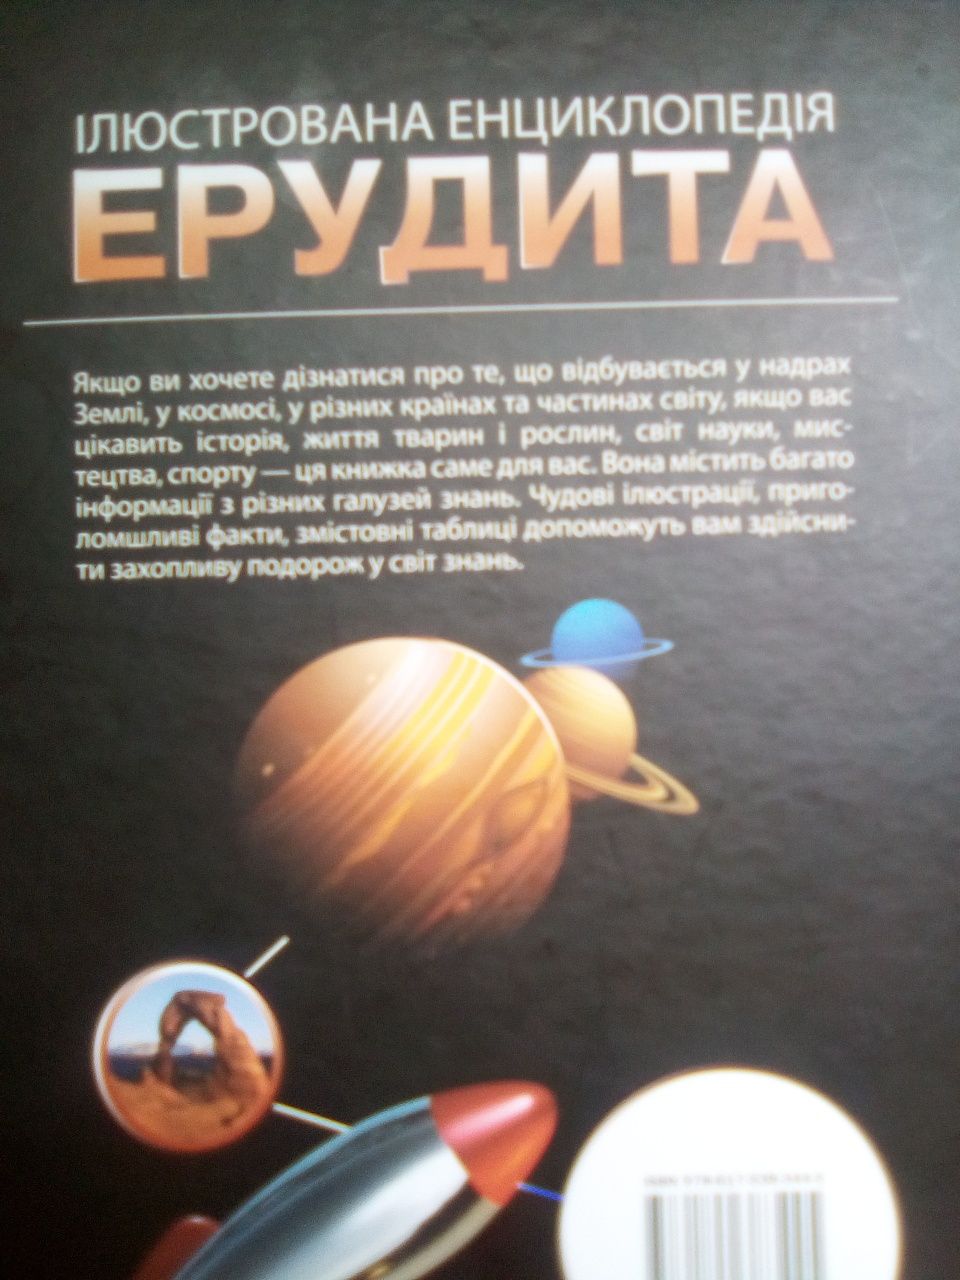 иллюстрированная энциклопедия эрудита для 7- 14лет на украинском языке